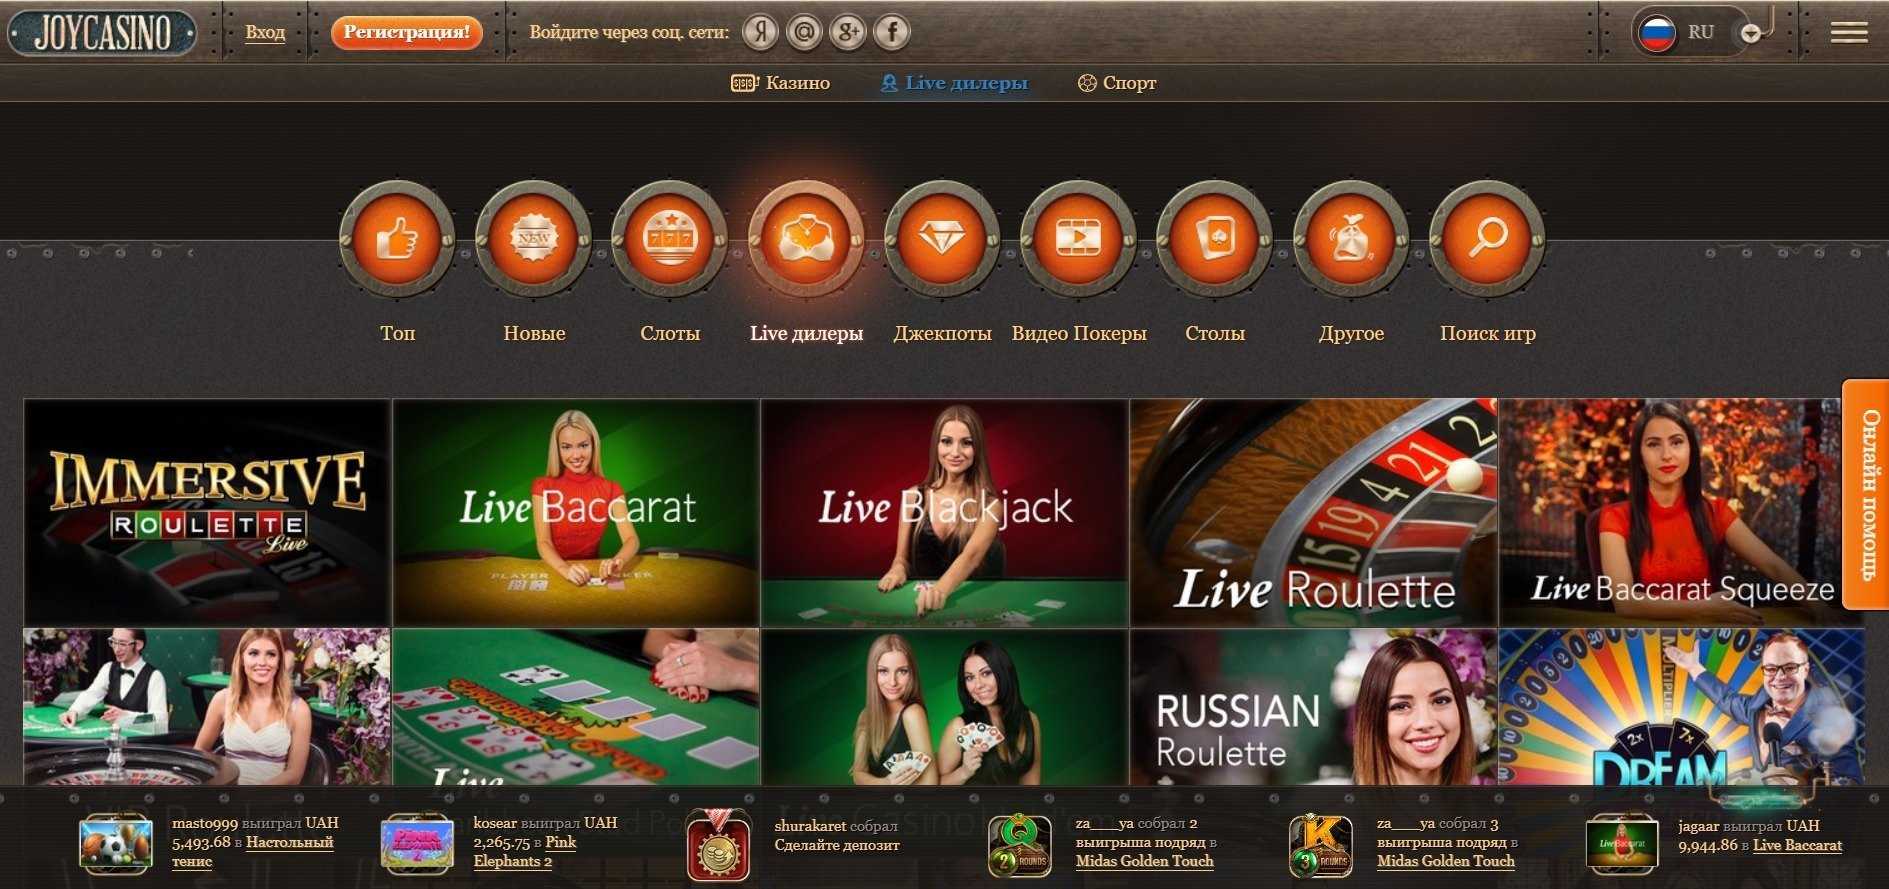 Joycasino сайт com официальный рабочее зеркало топ проверенных онлайн казино мобильные подборка лучших